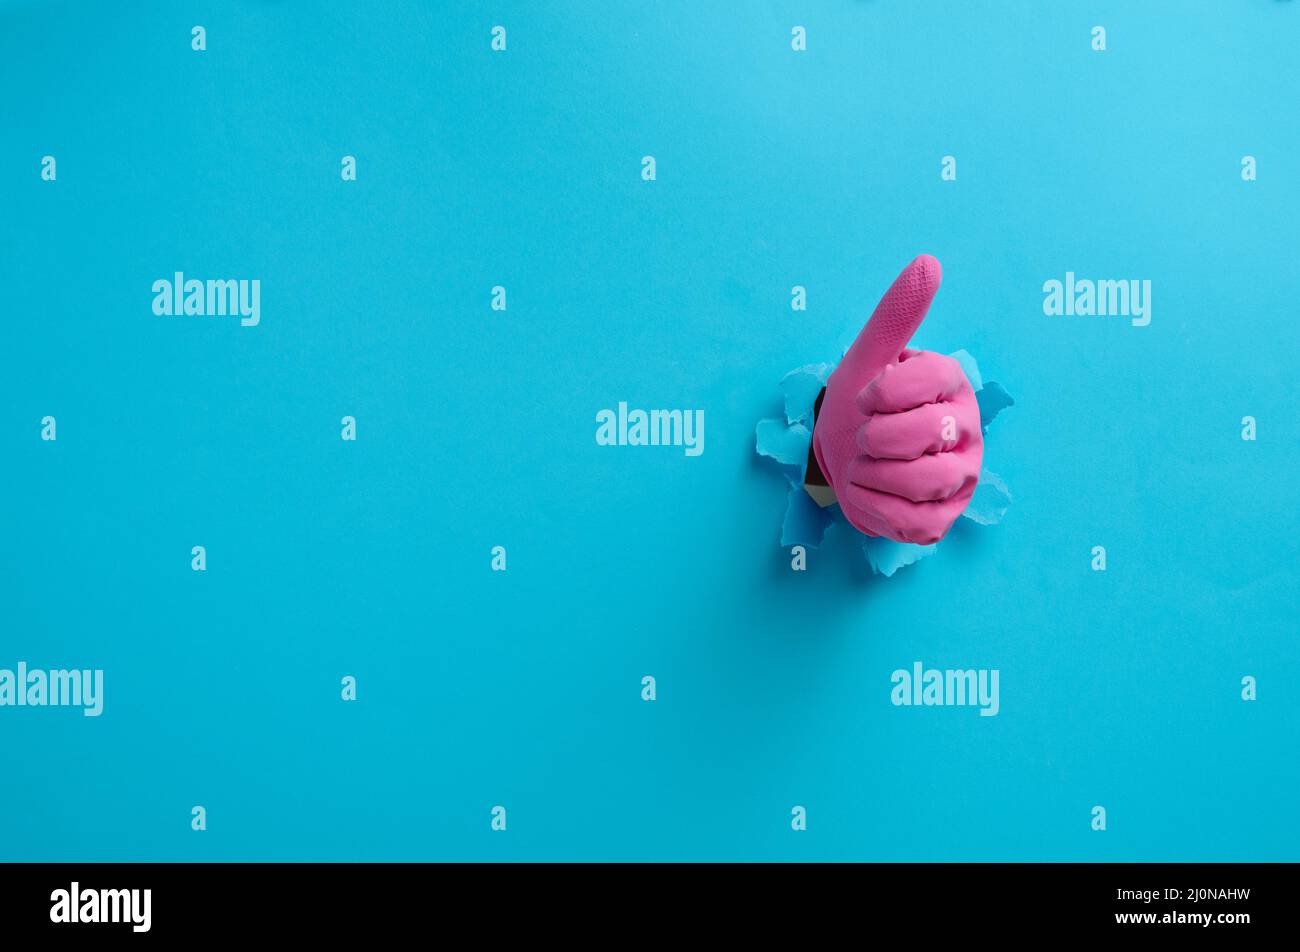 Eine Hand in einem pinken Haushaltsgummihandschuh ragt aus dem zerrissenen Loch und zeigt eine Geste okay, Daumen hoch. Blauer Hintergrund Stockfoto